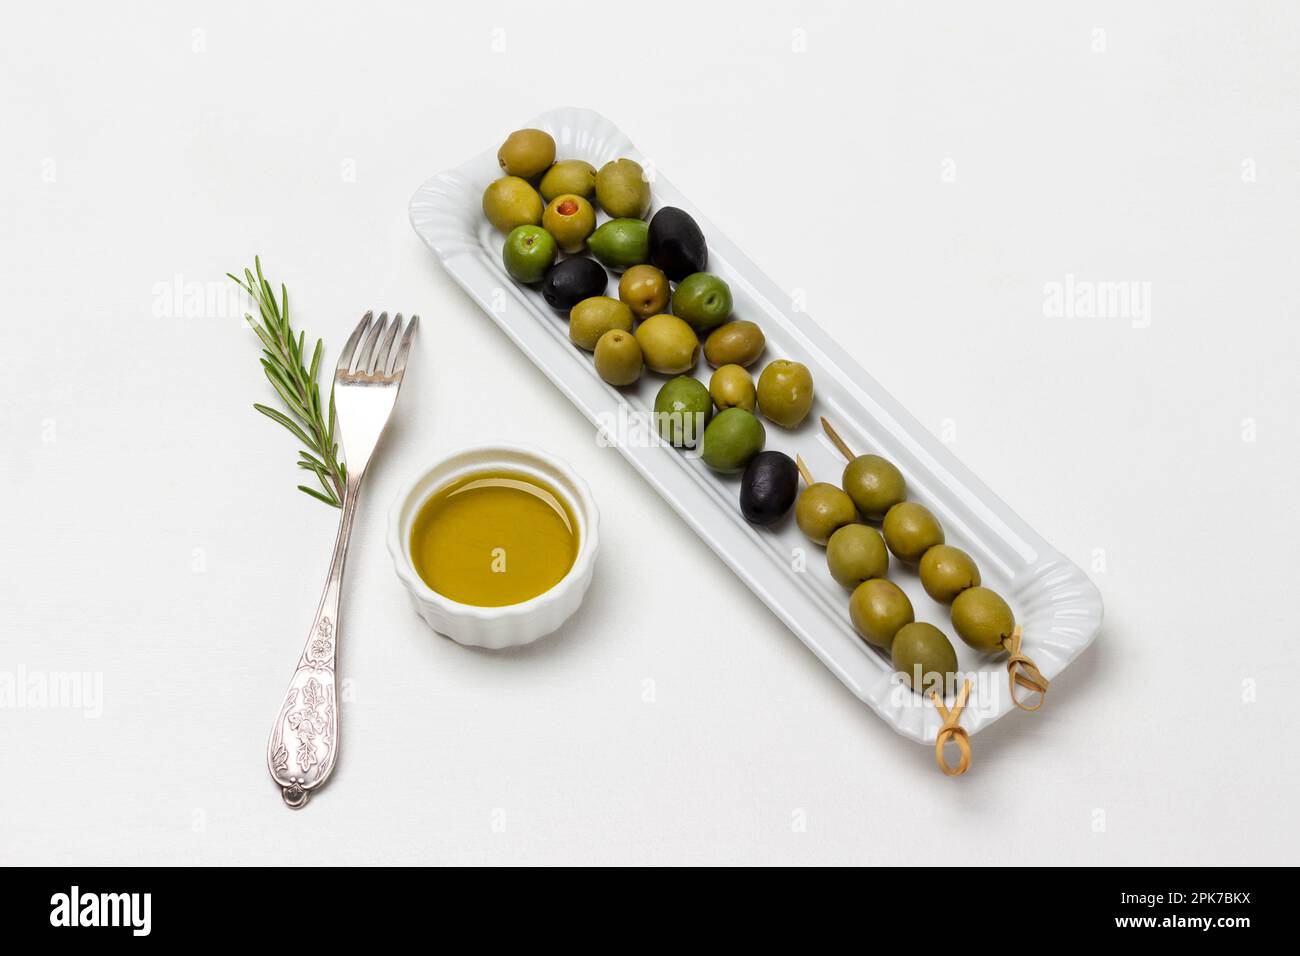 Grüne Oliven auf Spießen. Oliven auf weißem Teller. Olivenöl in der Schüssel. Gabel auf Tisch. Weißer Hintergrund. Stockfoto